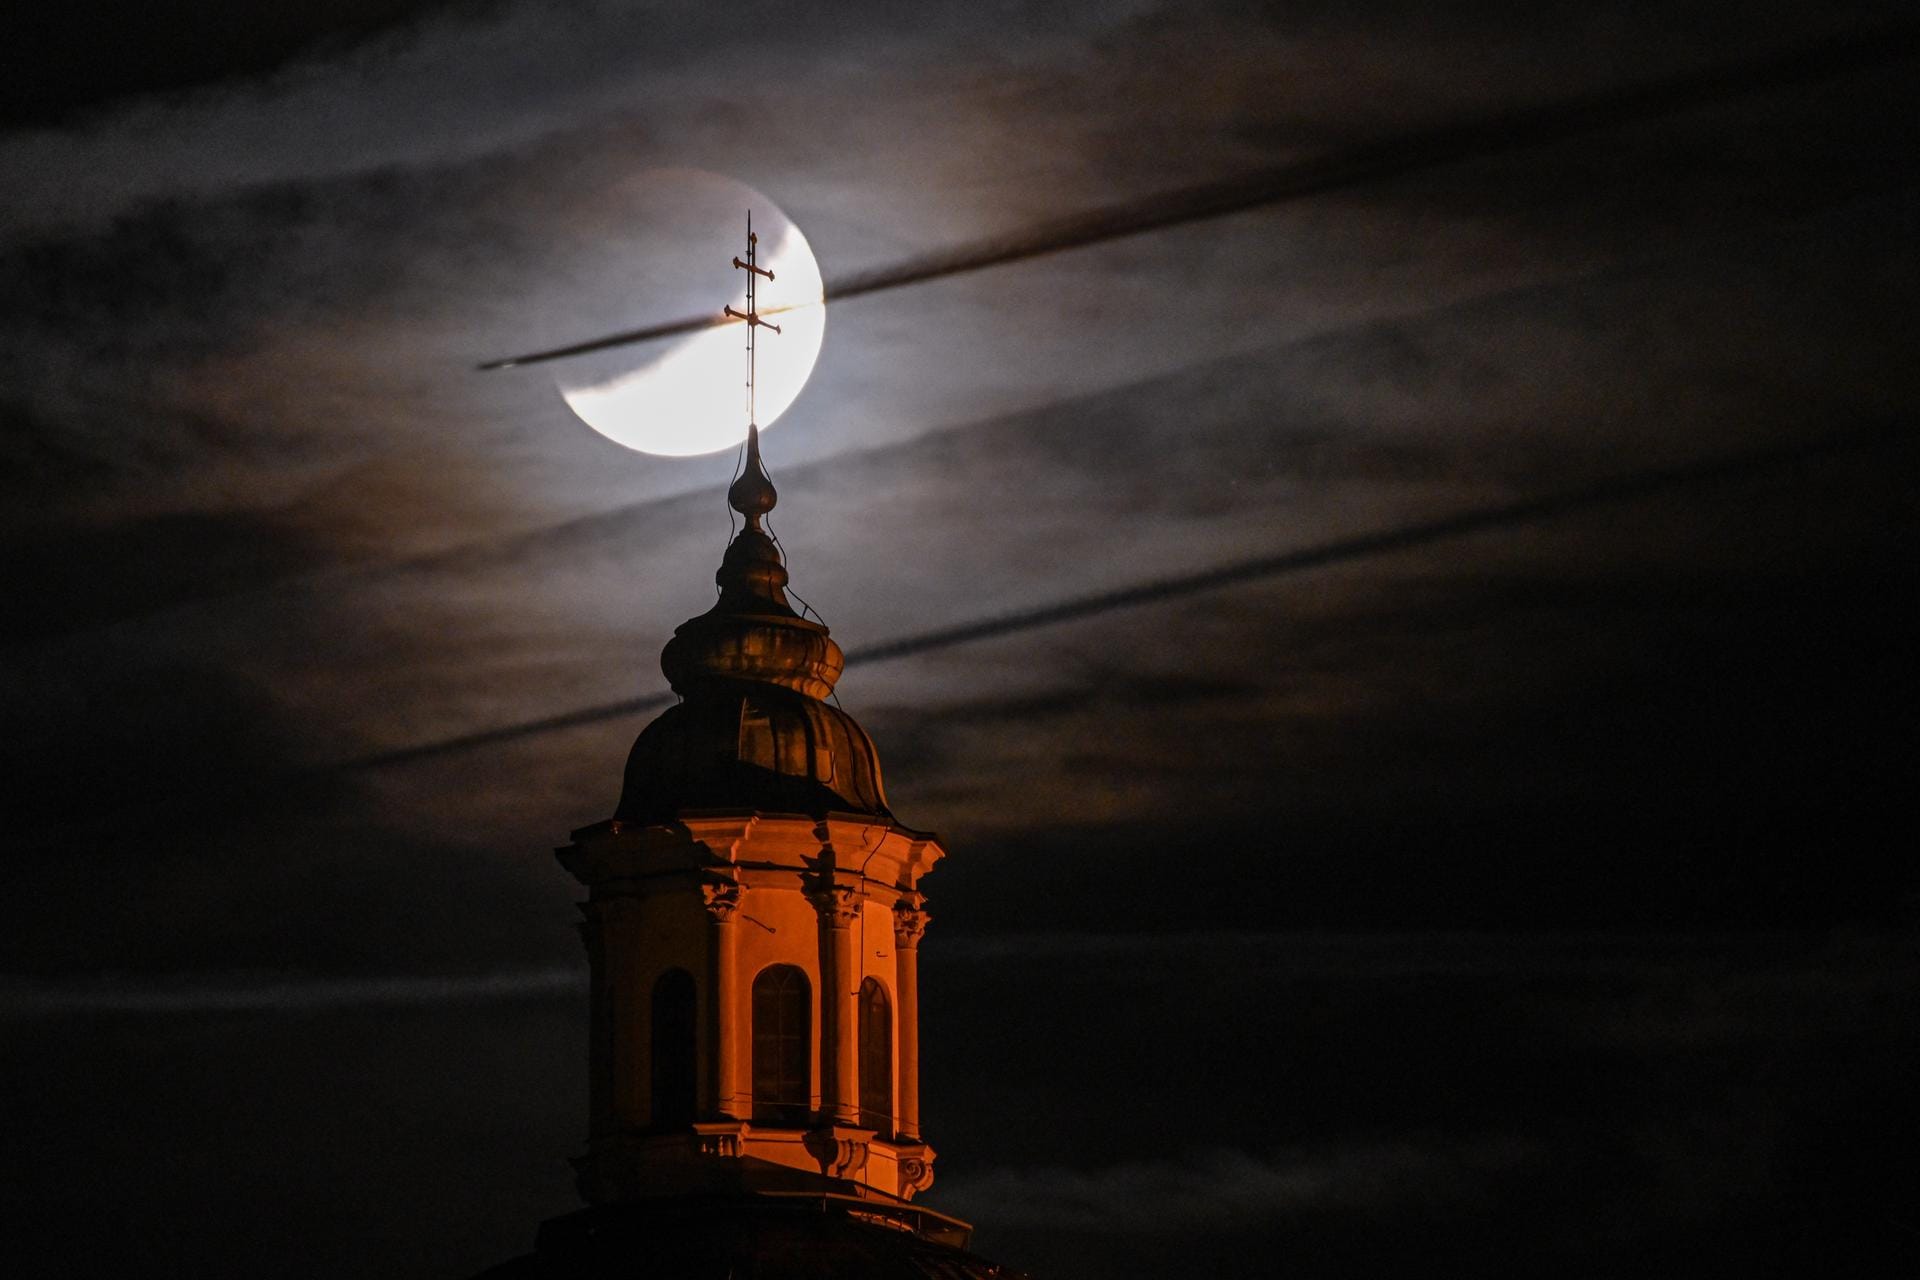 Baden-Württemberg, Weingarten: Der teils verdeckte Mond ist hinter Basilika zu sehen, während ein Flugzeug vor dem Mond vorbei fliegt.